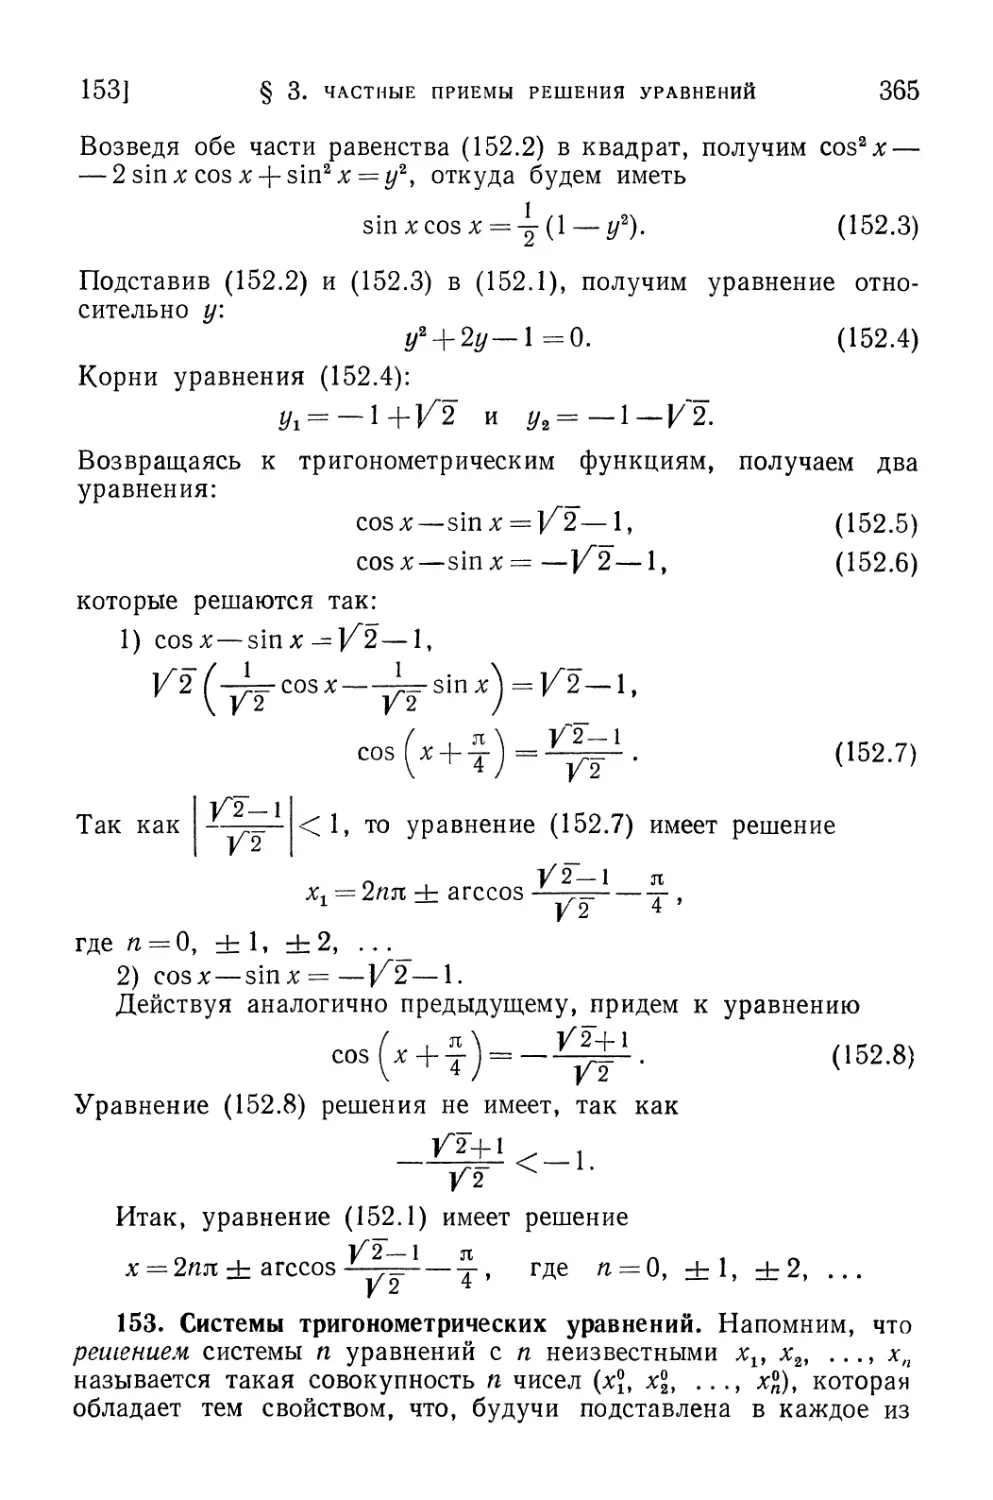 153. Системы тригономе¬трических уравнений